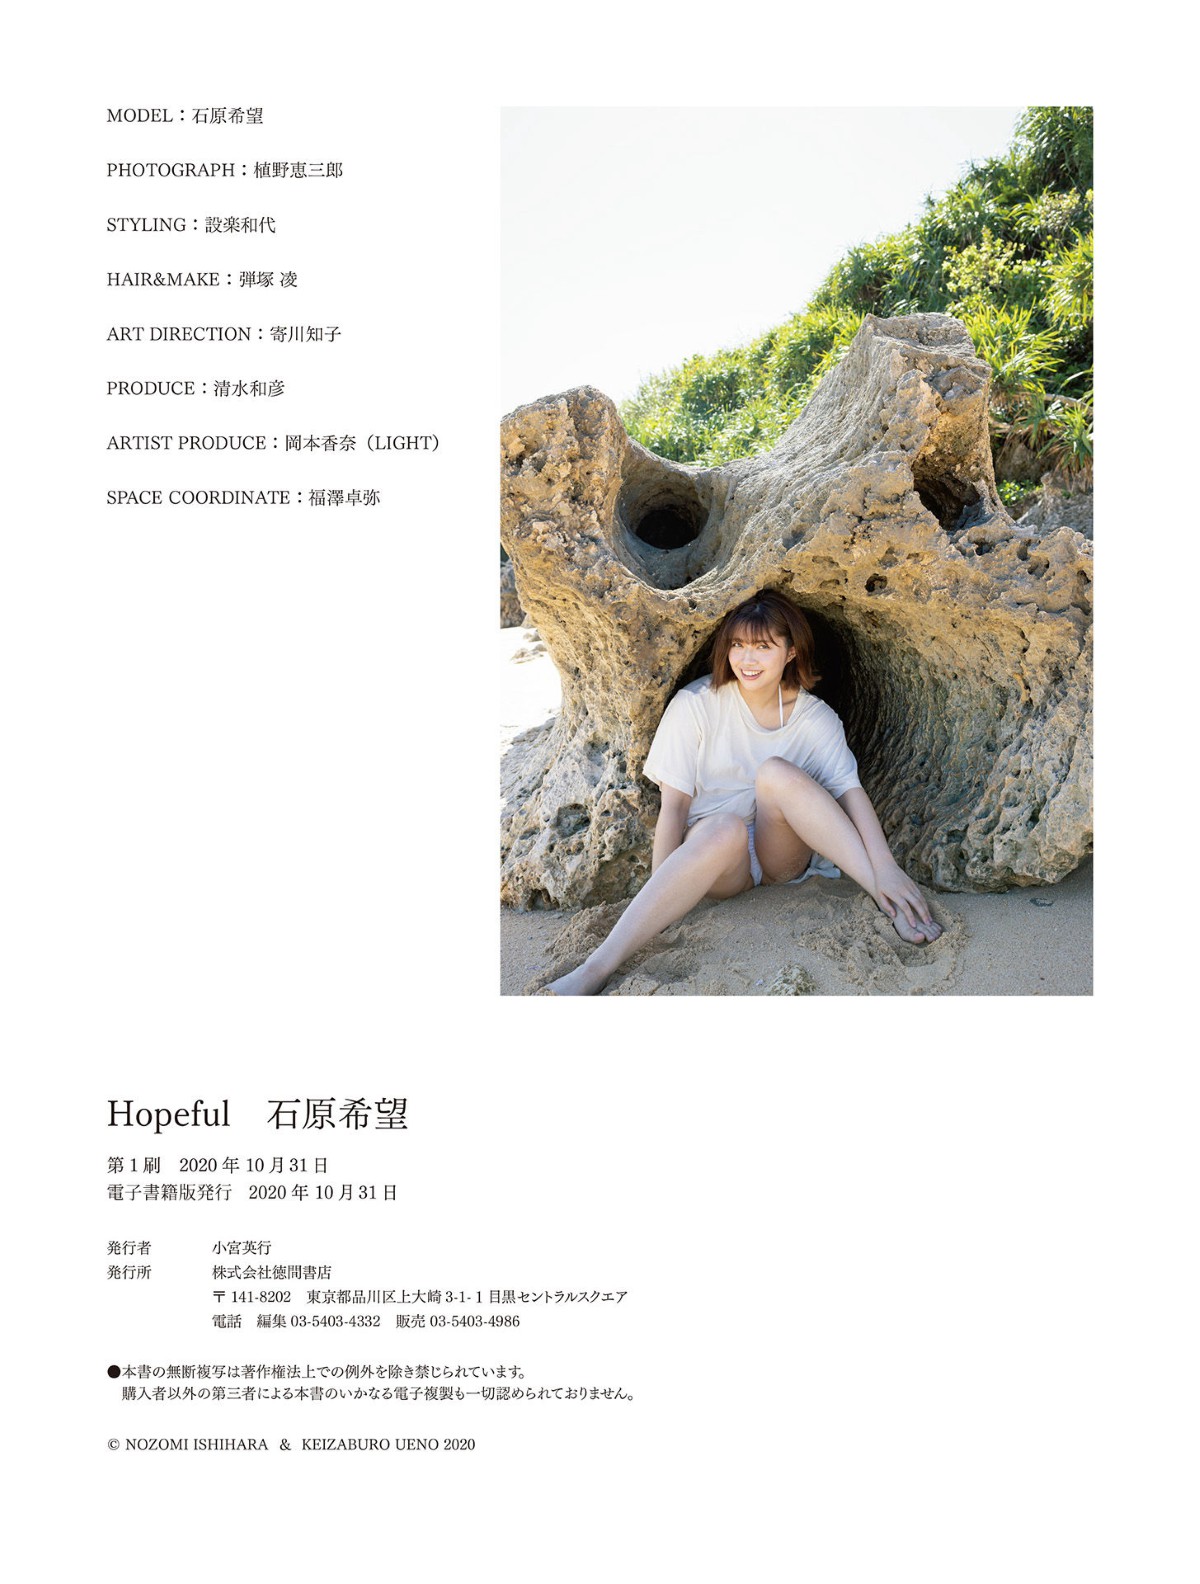 Photobook Nozomi Ishihara 石原希望 Hopeful 0049 5751917551.jpg